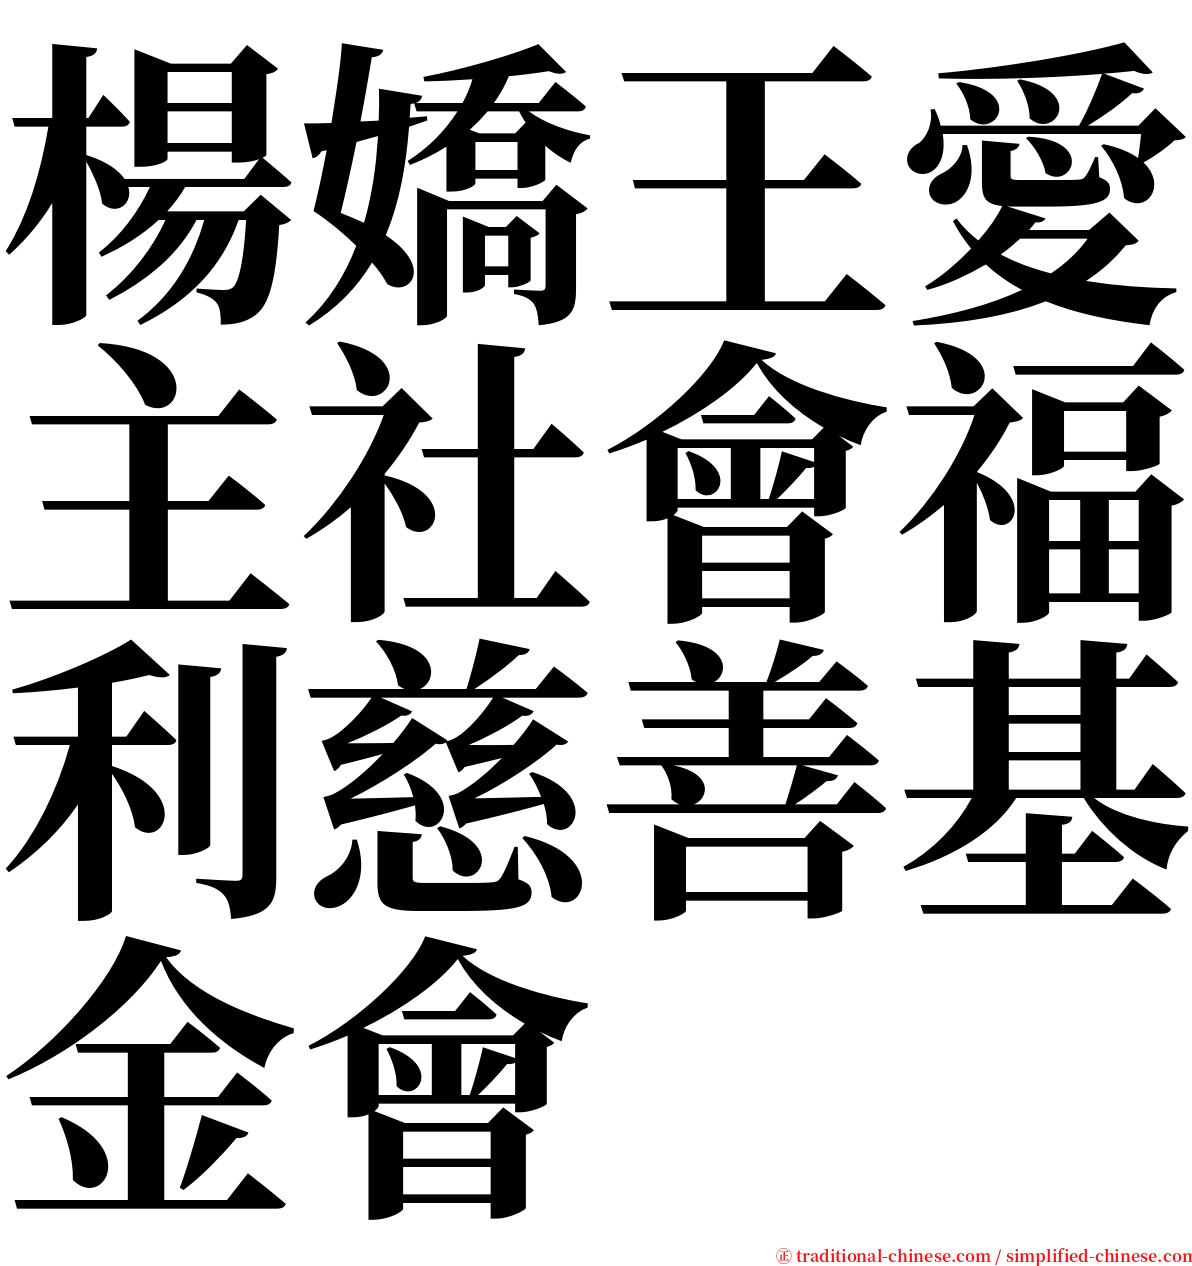 楊嬌王愛主社會福利慈善基金會 serif font